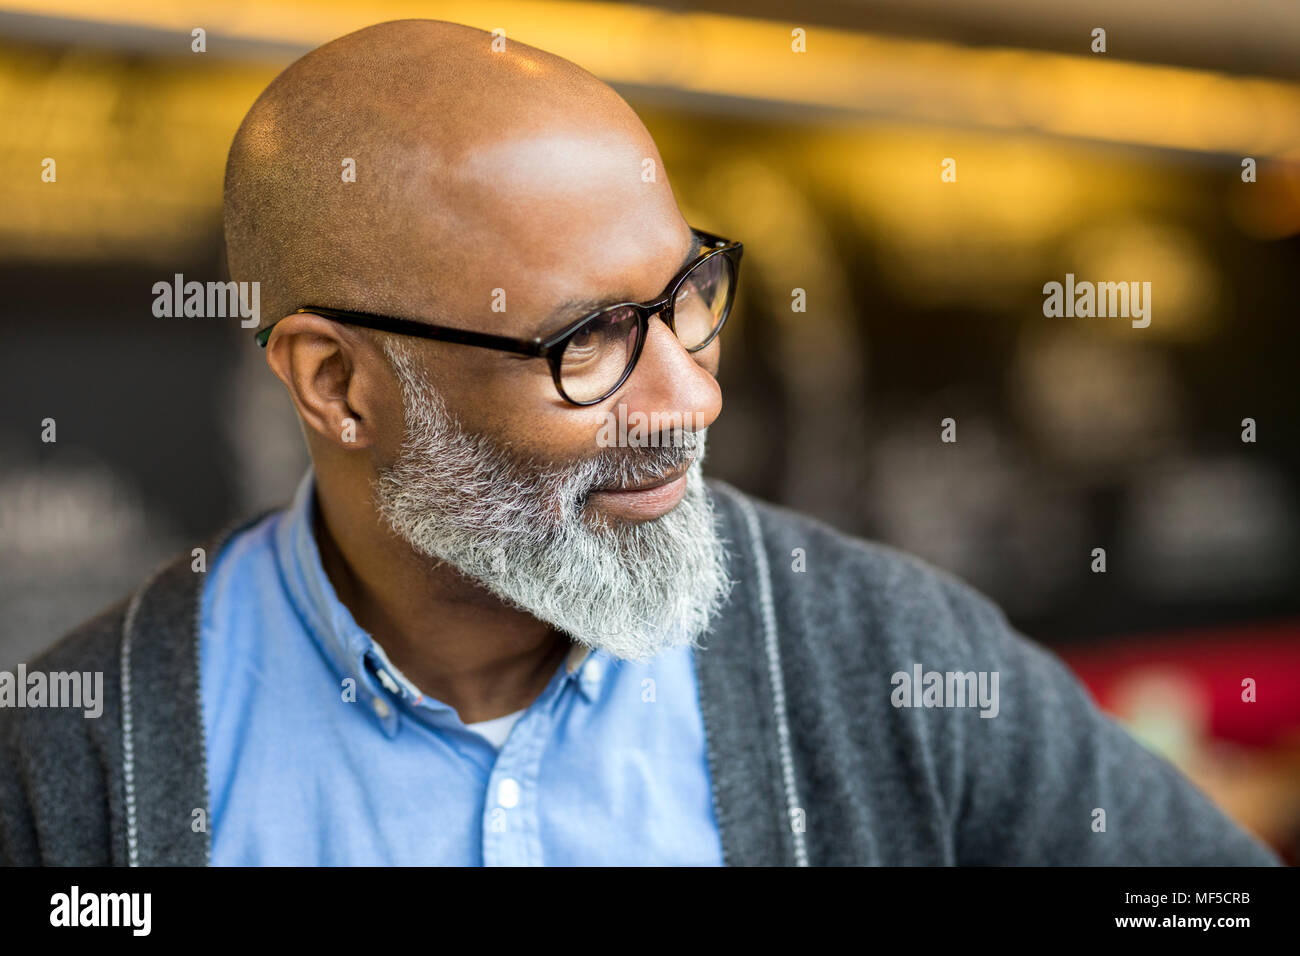 Porträt der glatzköpfige Mann mit grauem Bart, Brille Stockfotografie -  Alamy